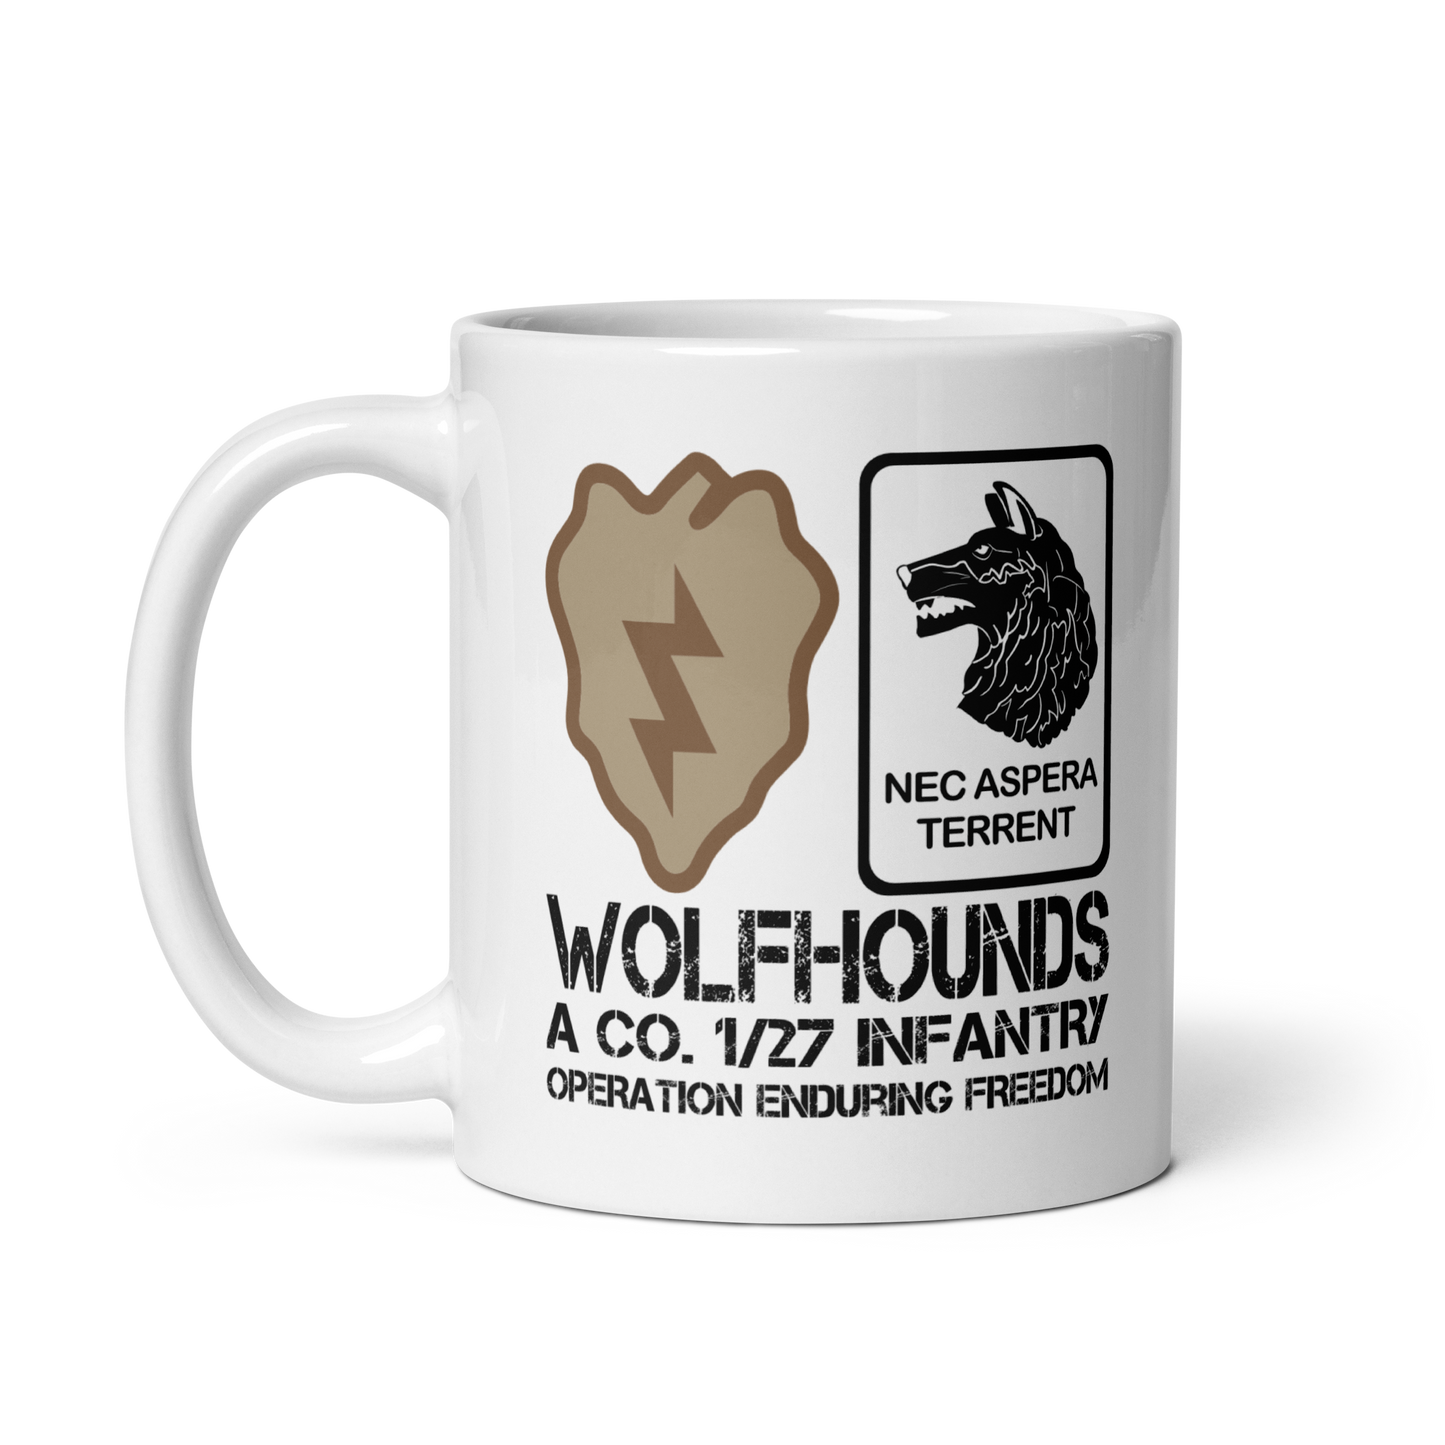 1/27 Infantry Wolfhounds OEF Mug